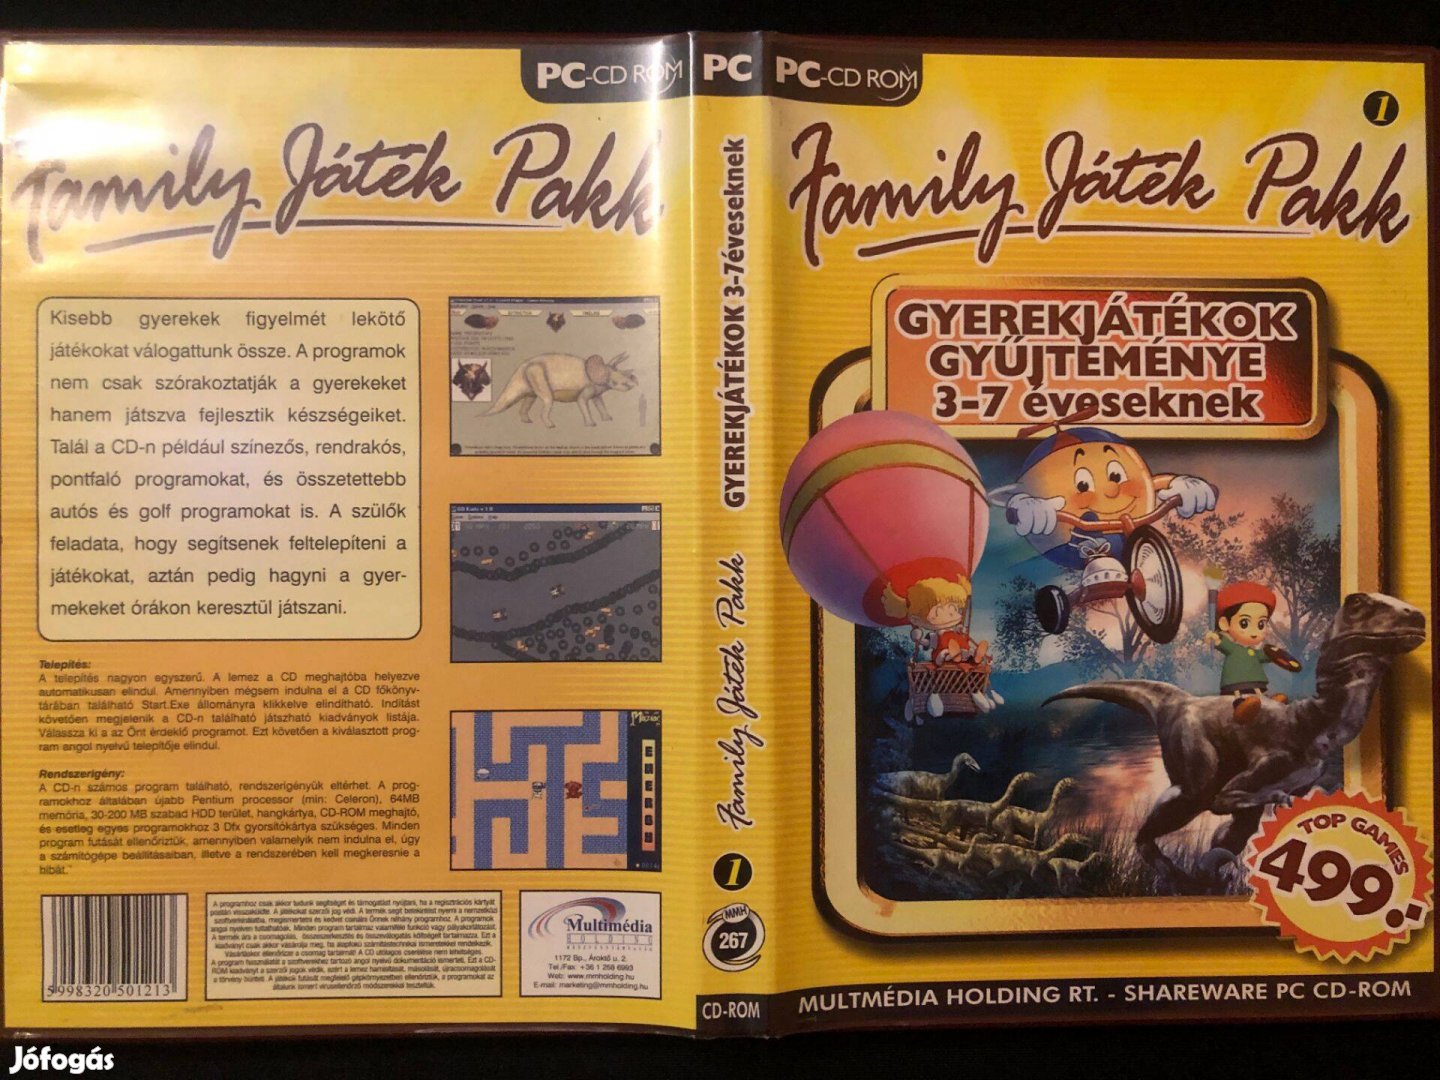 Family játék pakk Gyerekjátékok gyűjteménye 3-7 éveseknek PC játék